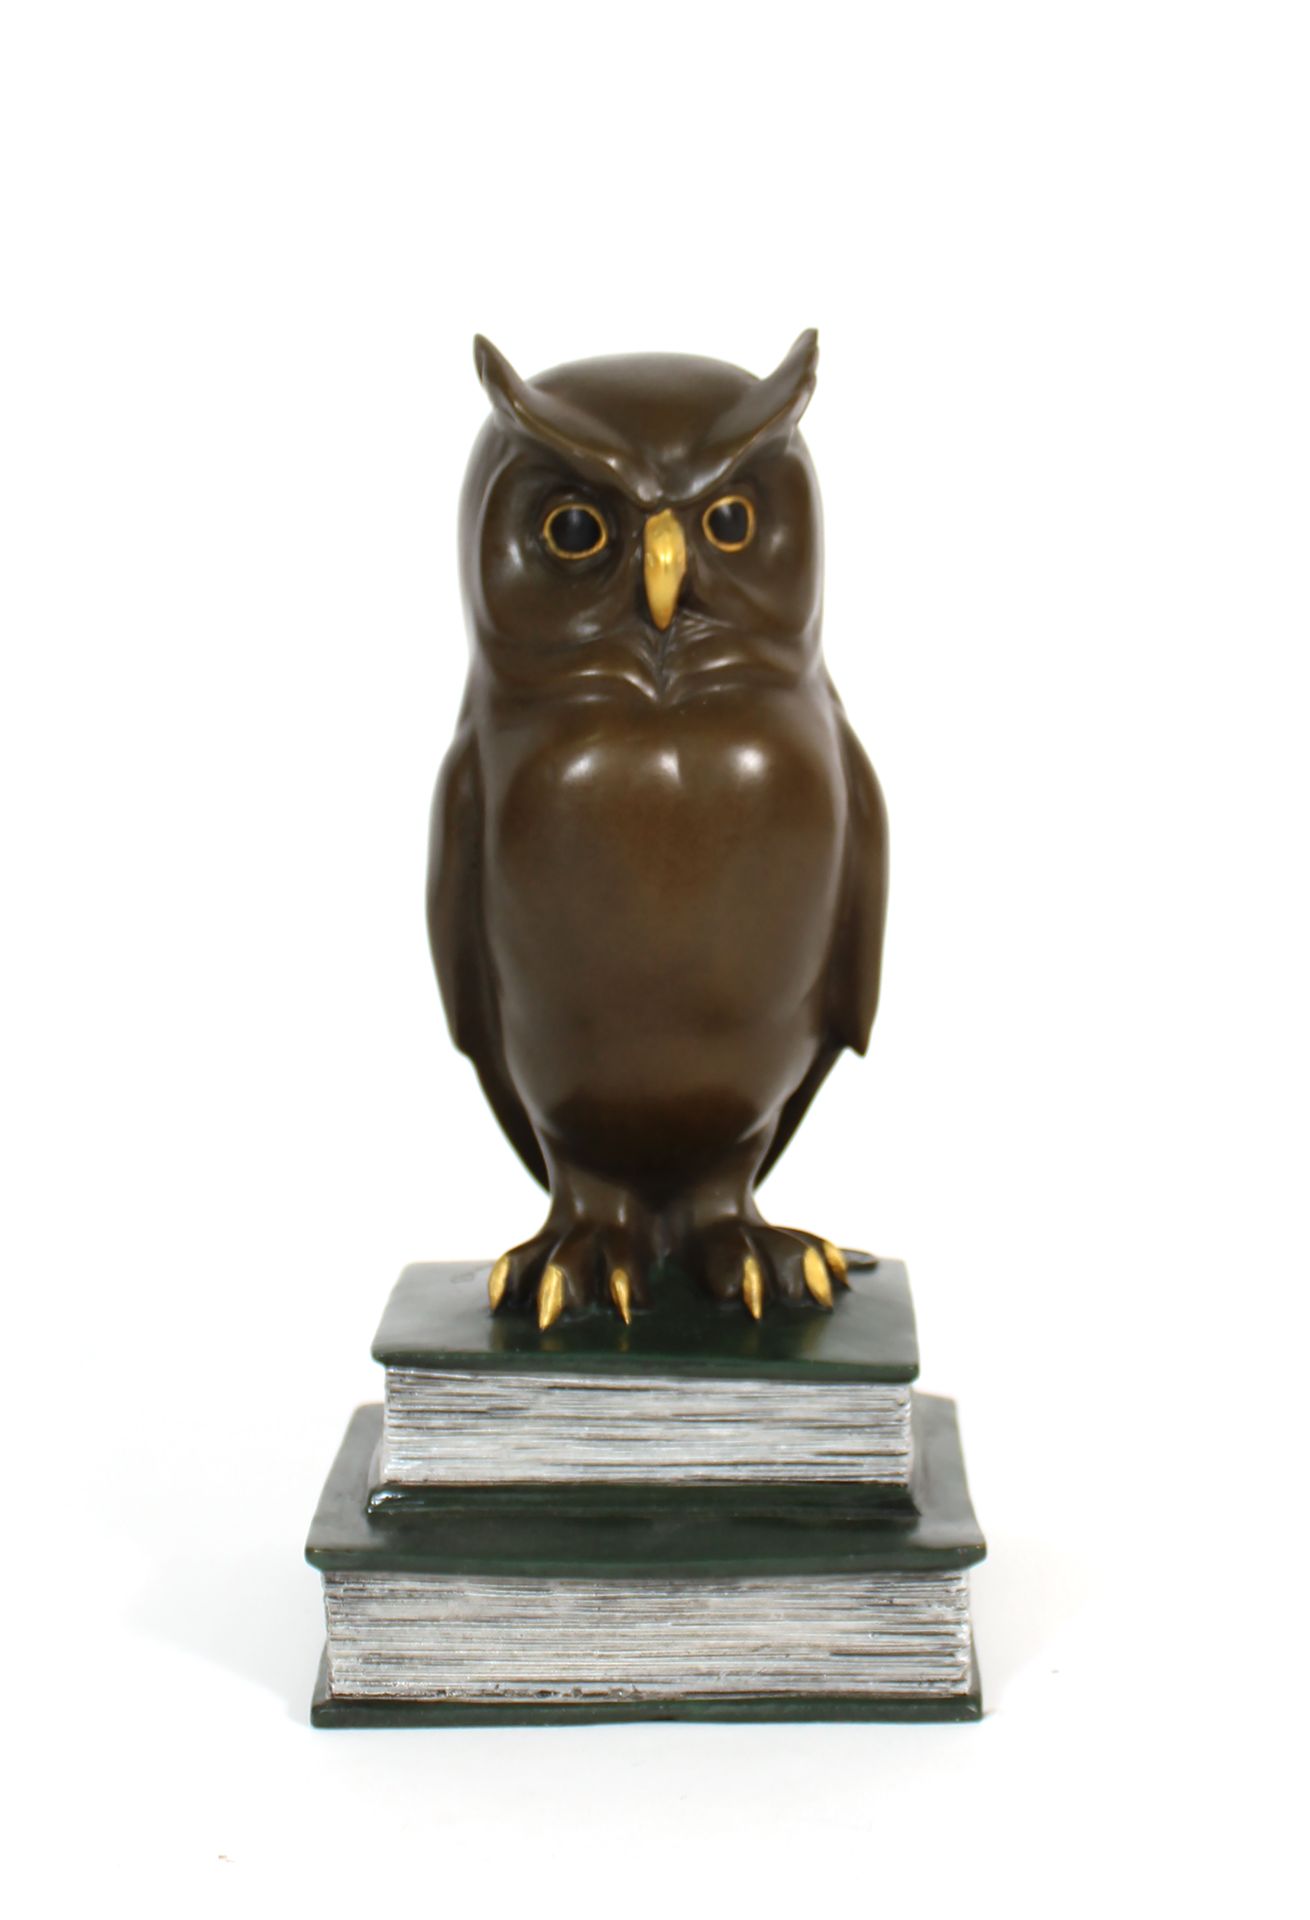 Null École du XXIe siècle
Hibou
Bronze laqué polychrome
H. 21 cm